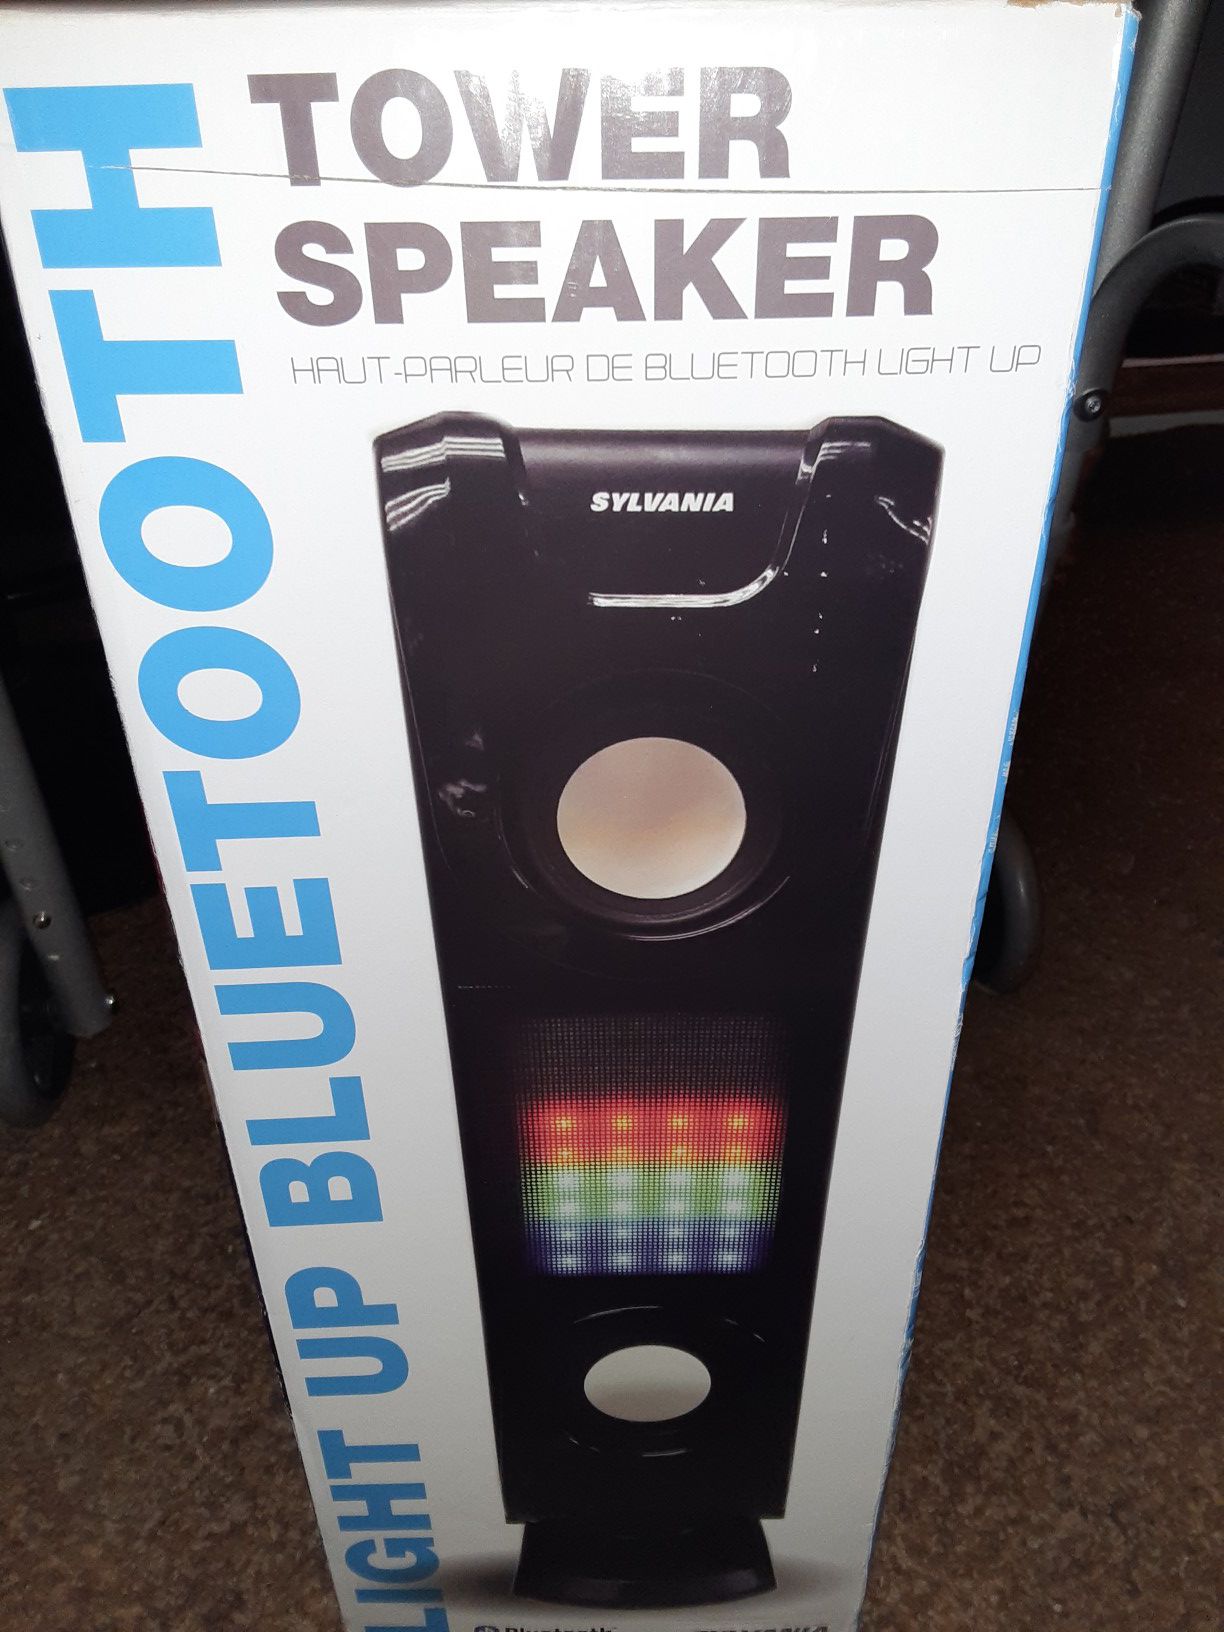 Sylvania light up Bluetooth tower speaker